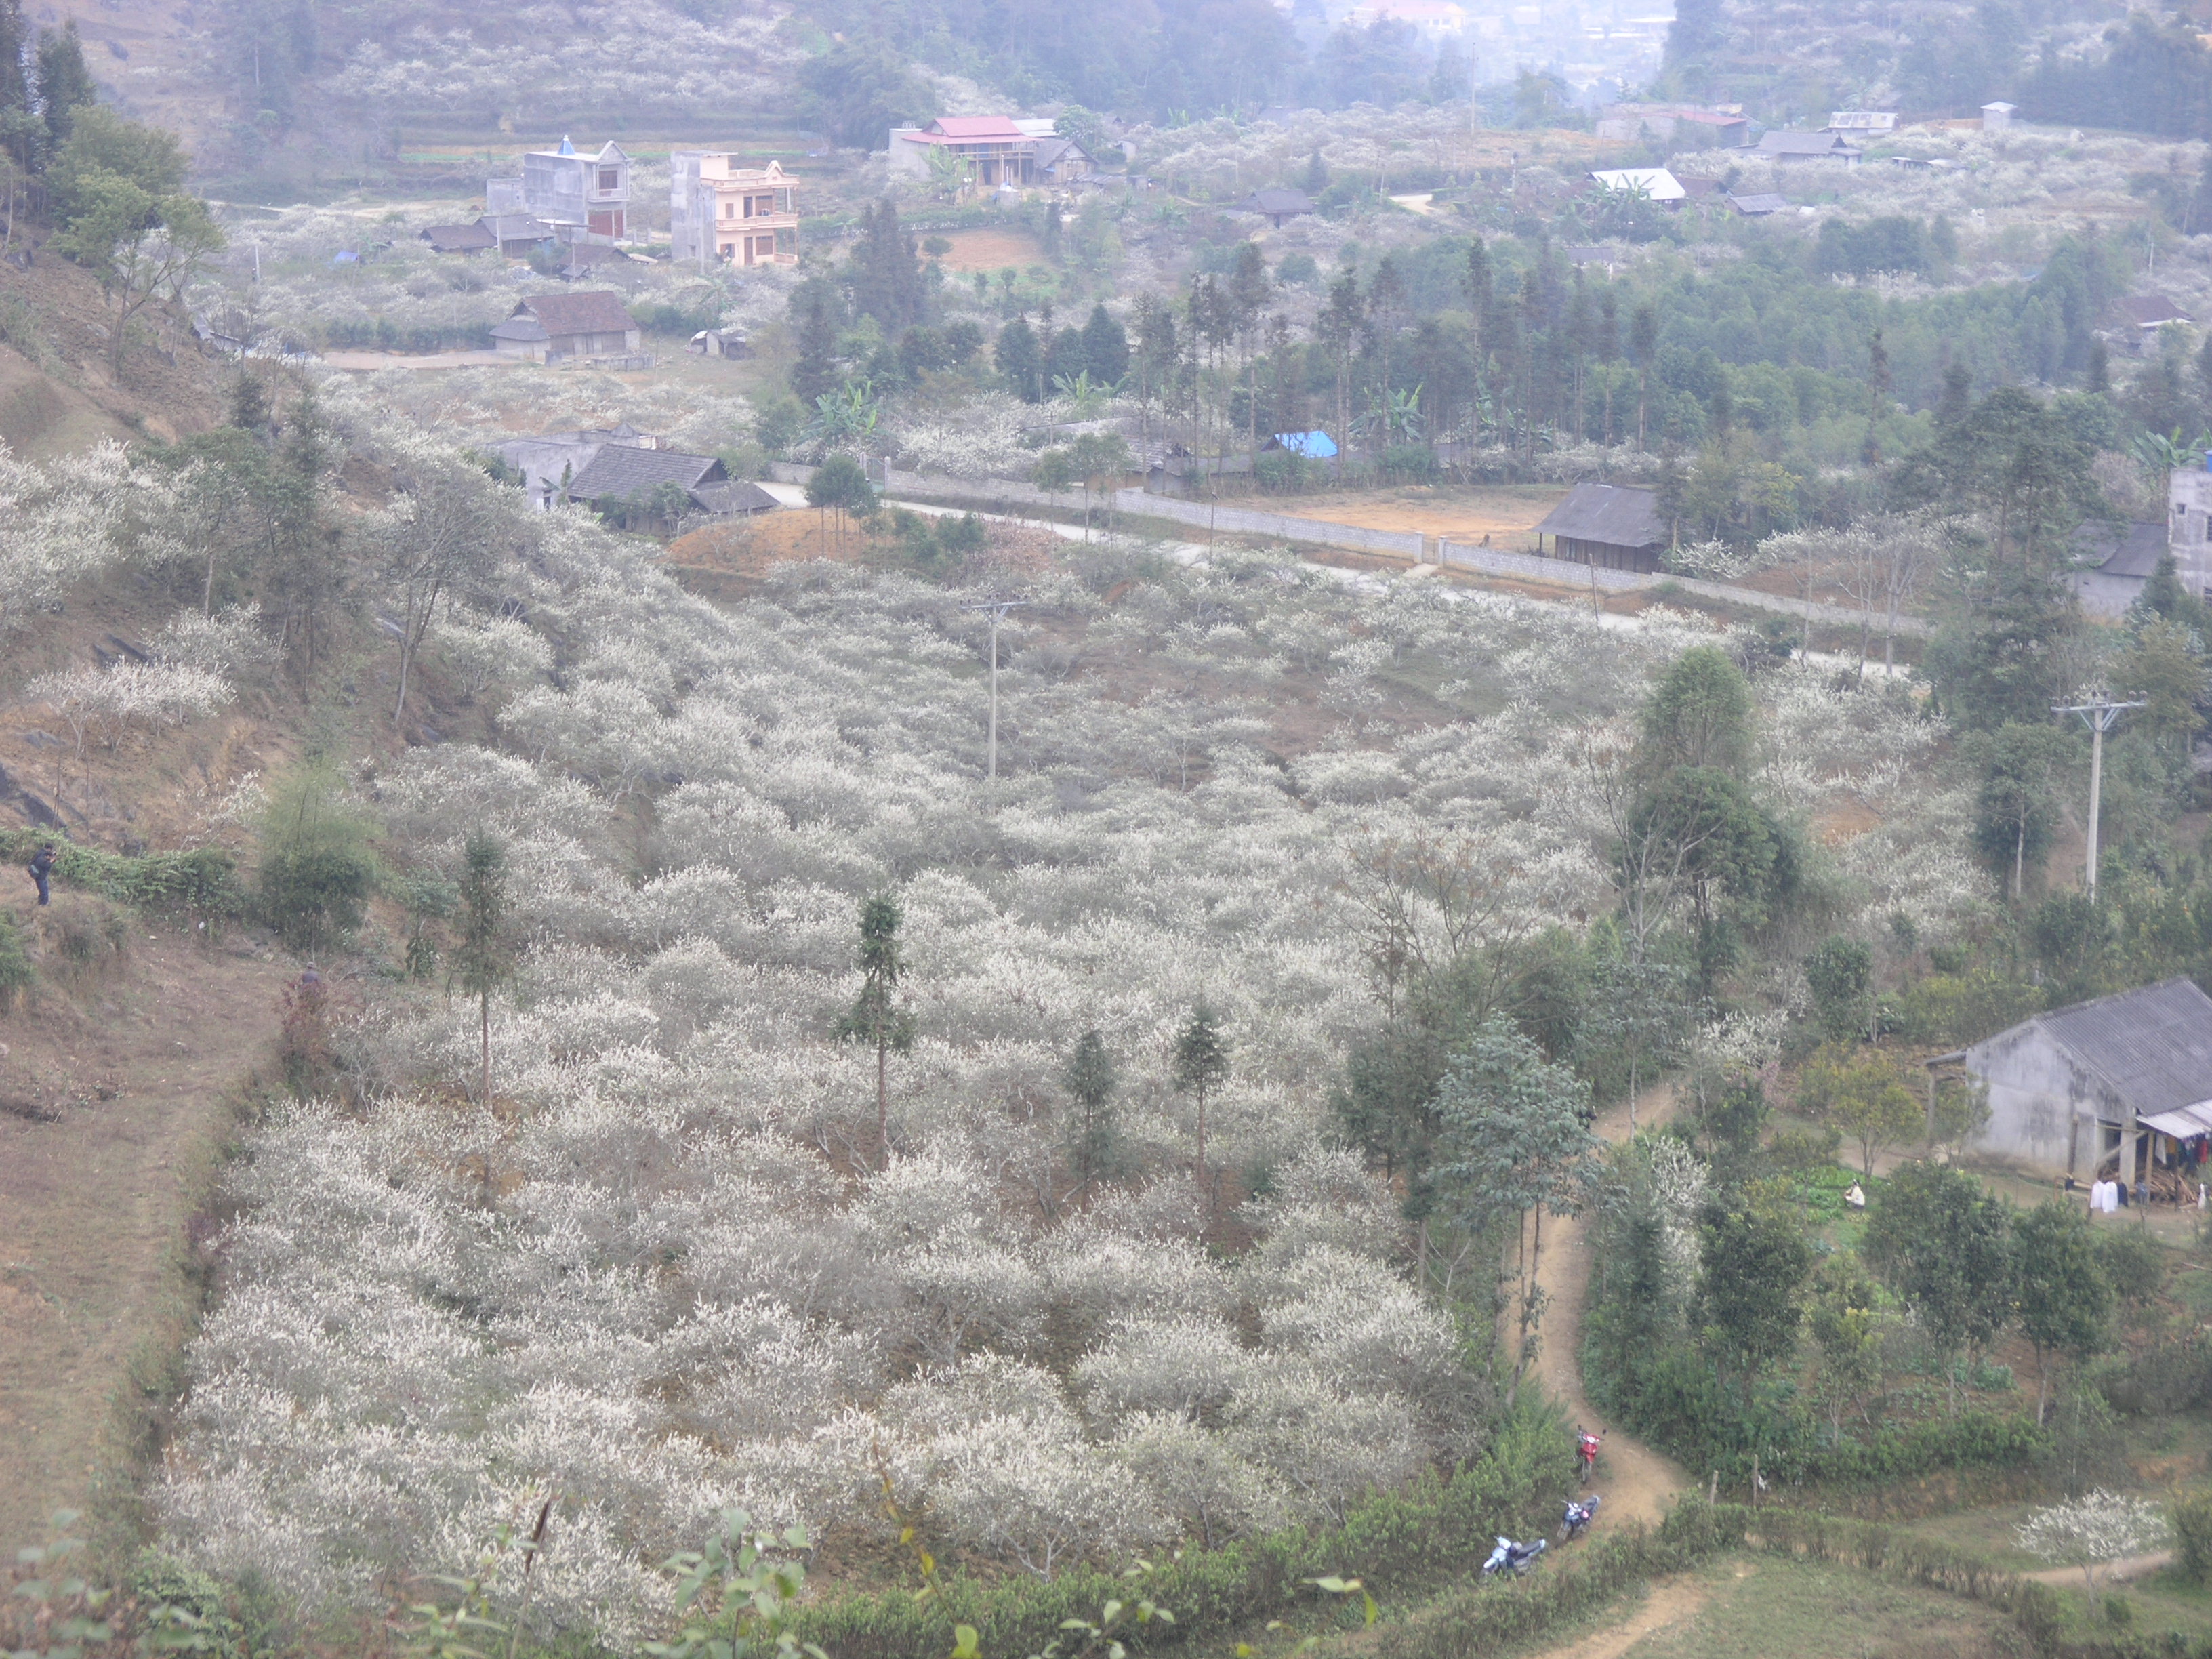 Plum blossoms cloak Bac Ha plateaux